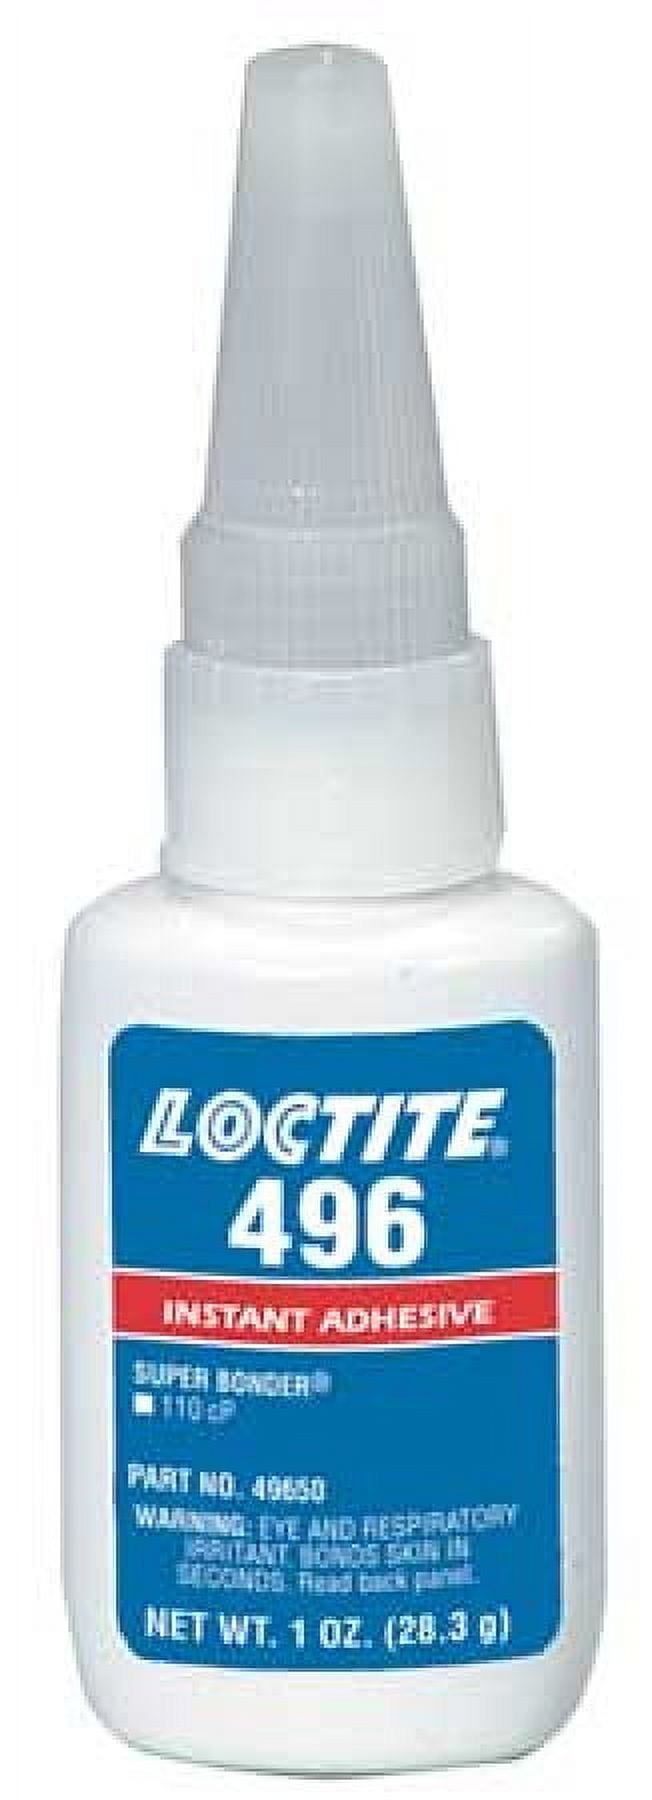 Loctite Plastics Bonding